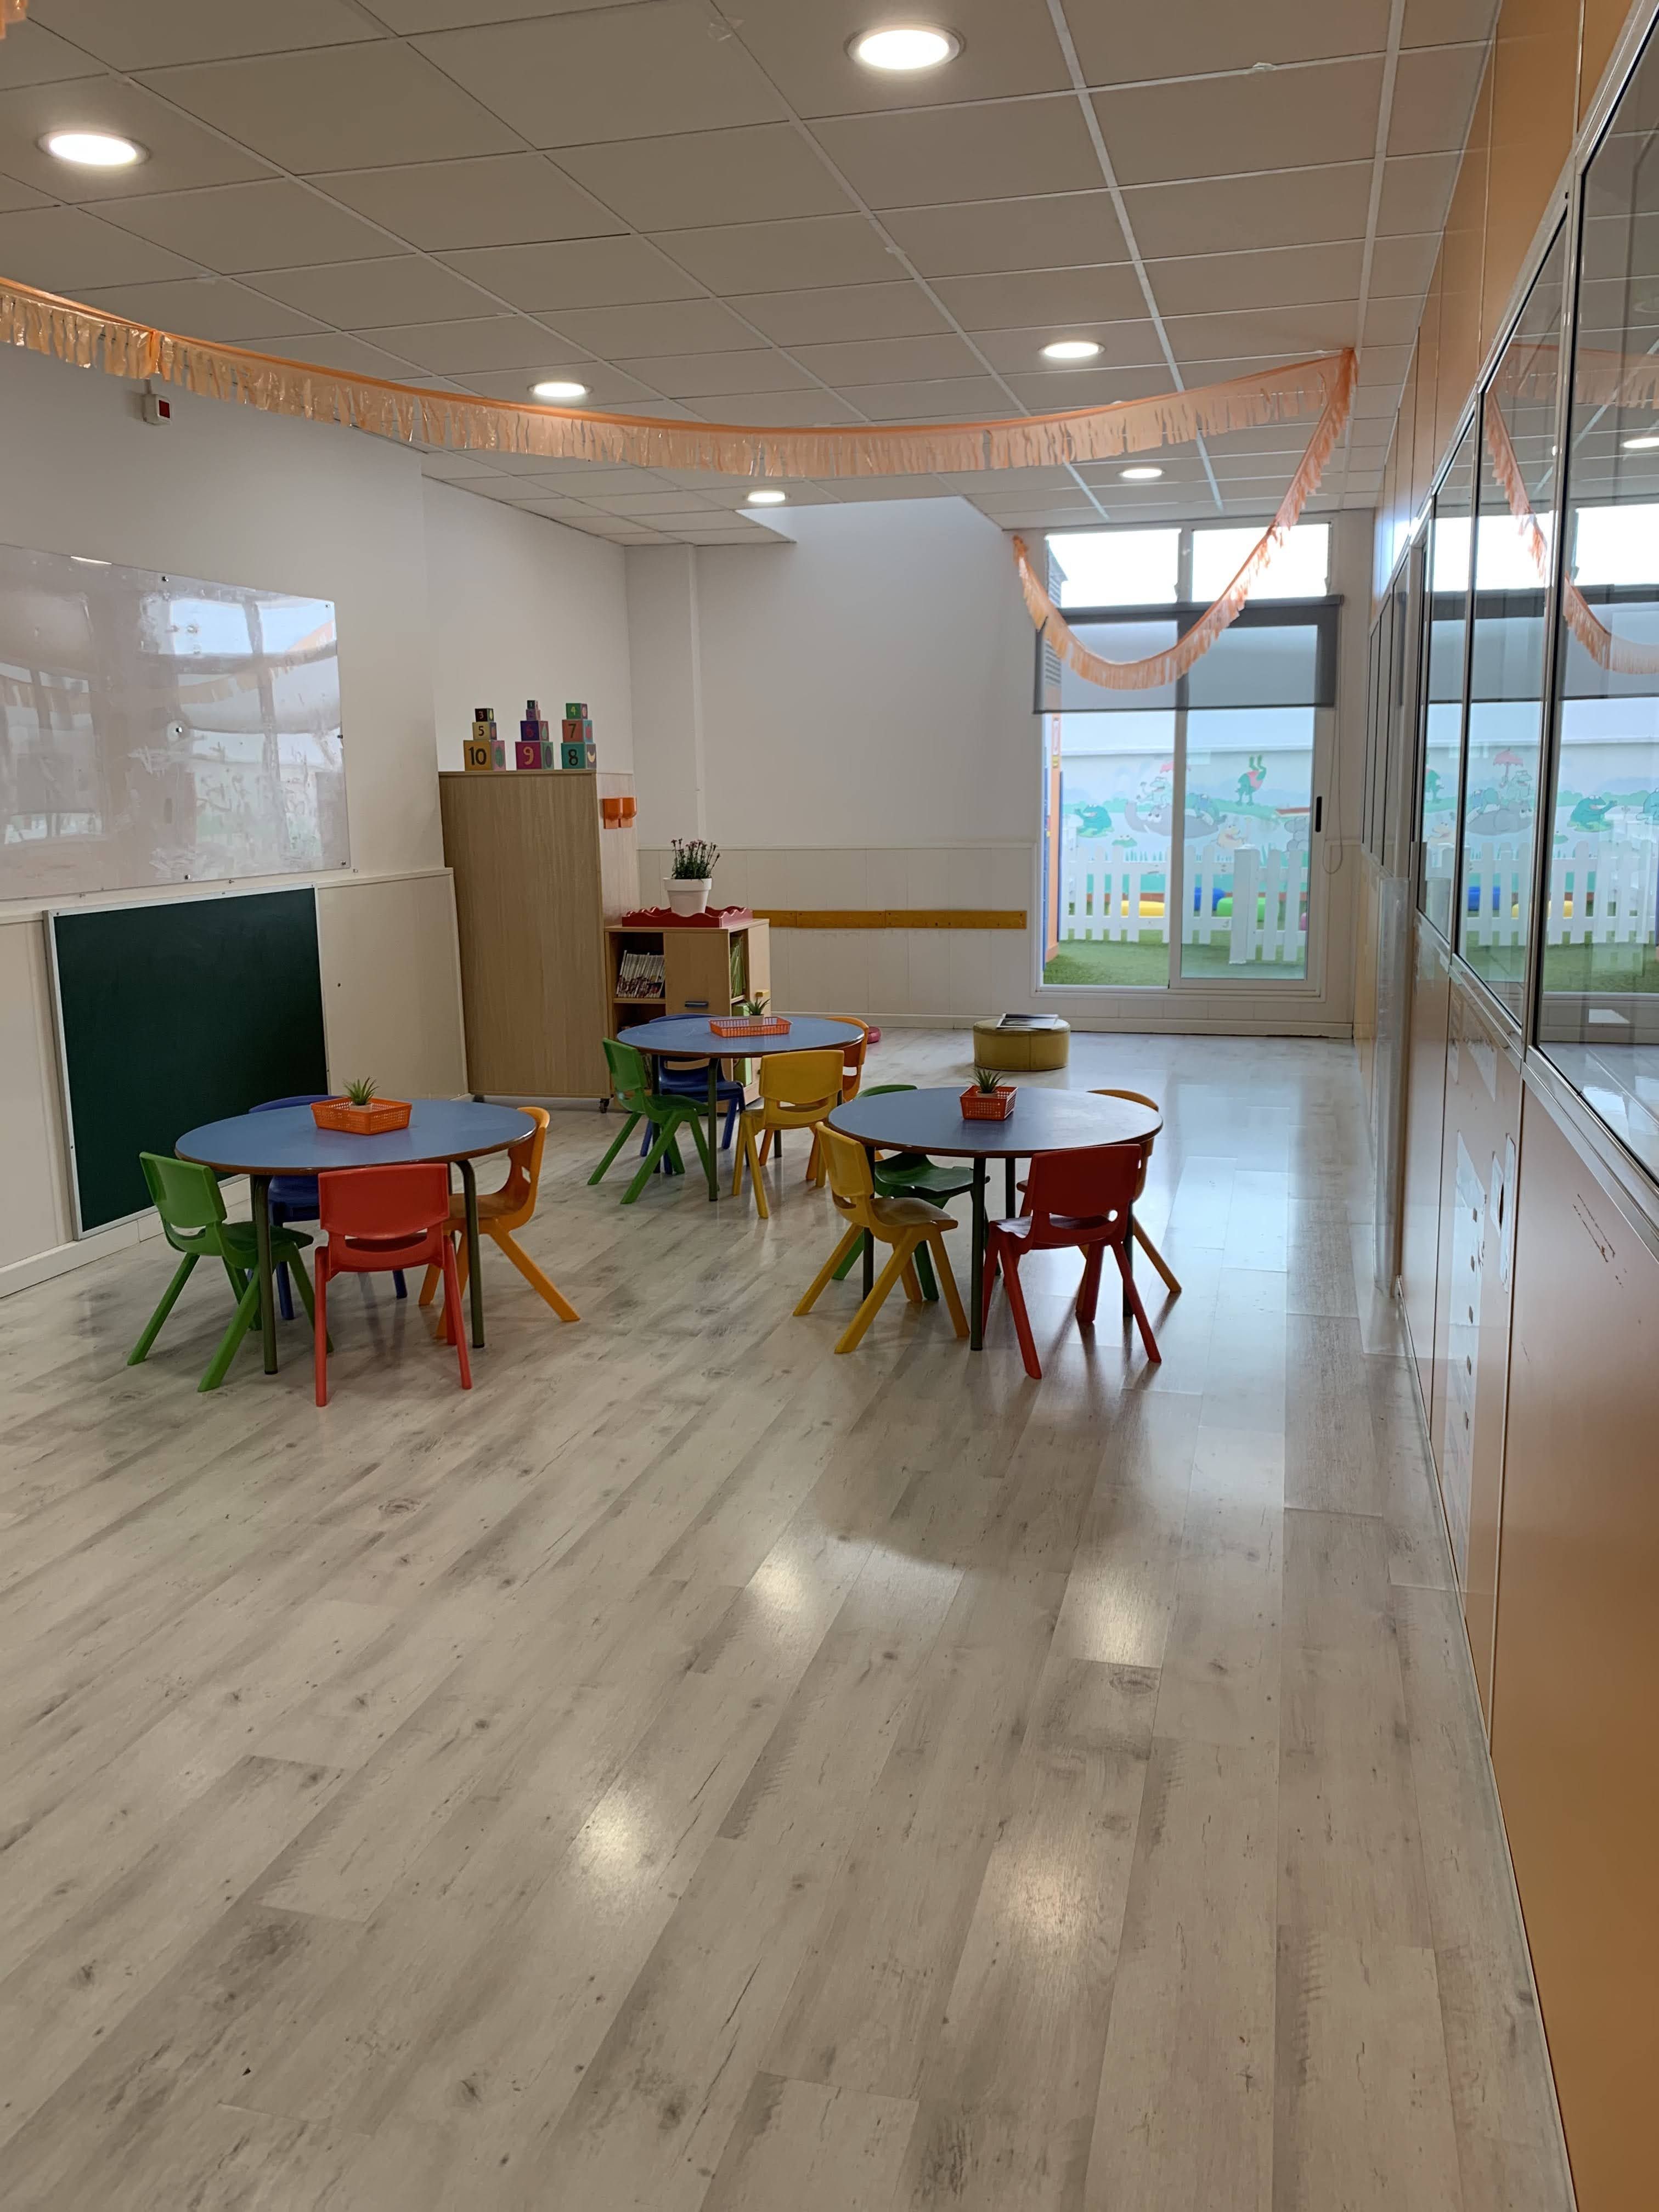 Aula Naranja, aula de 2 a 3 años